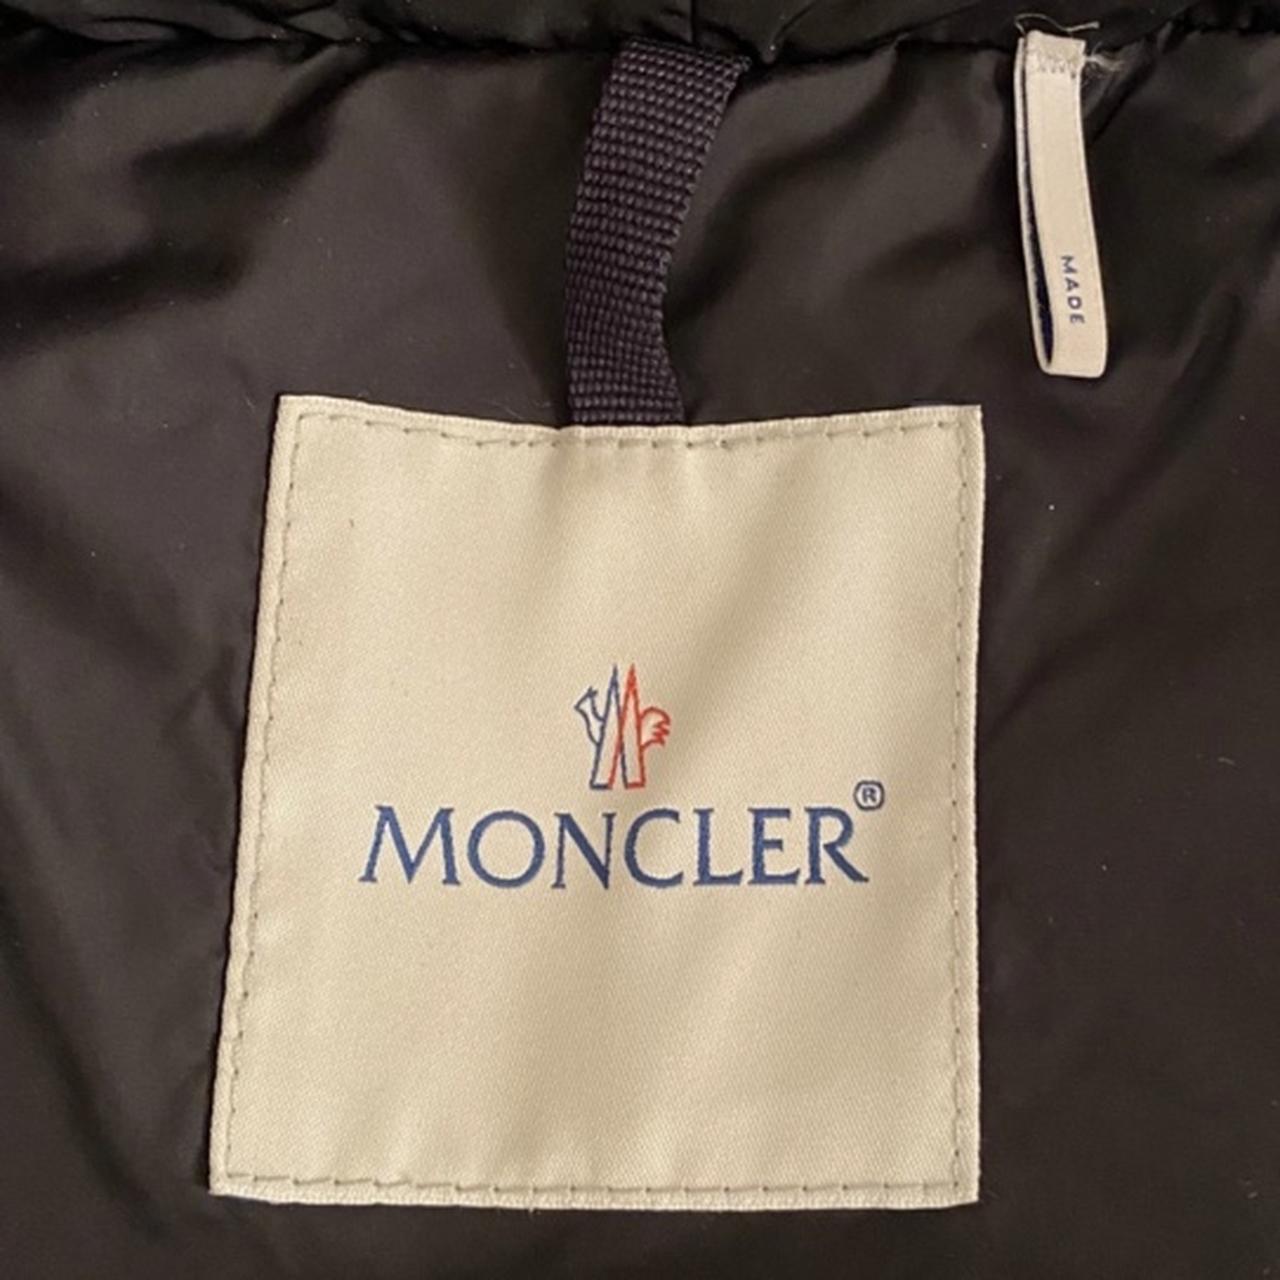 Moncler Renne Black Long Down Coat Details... - Depop